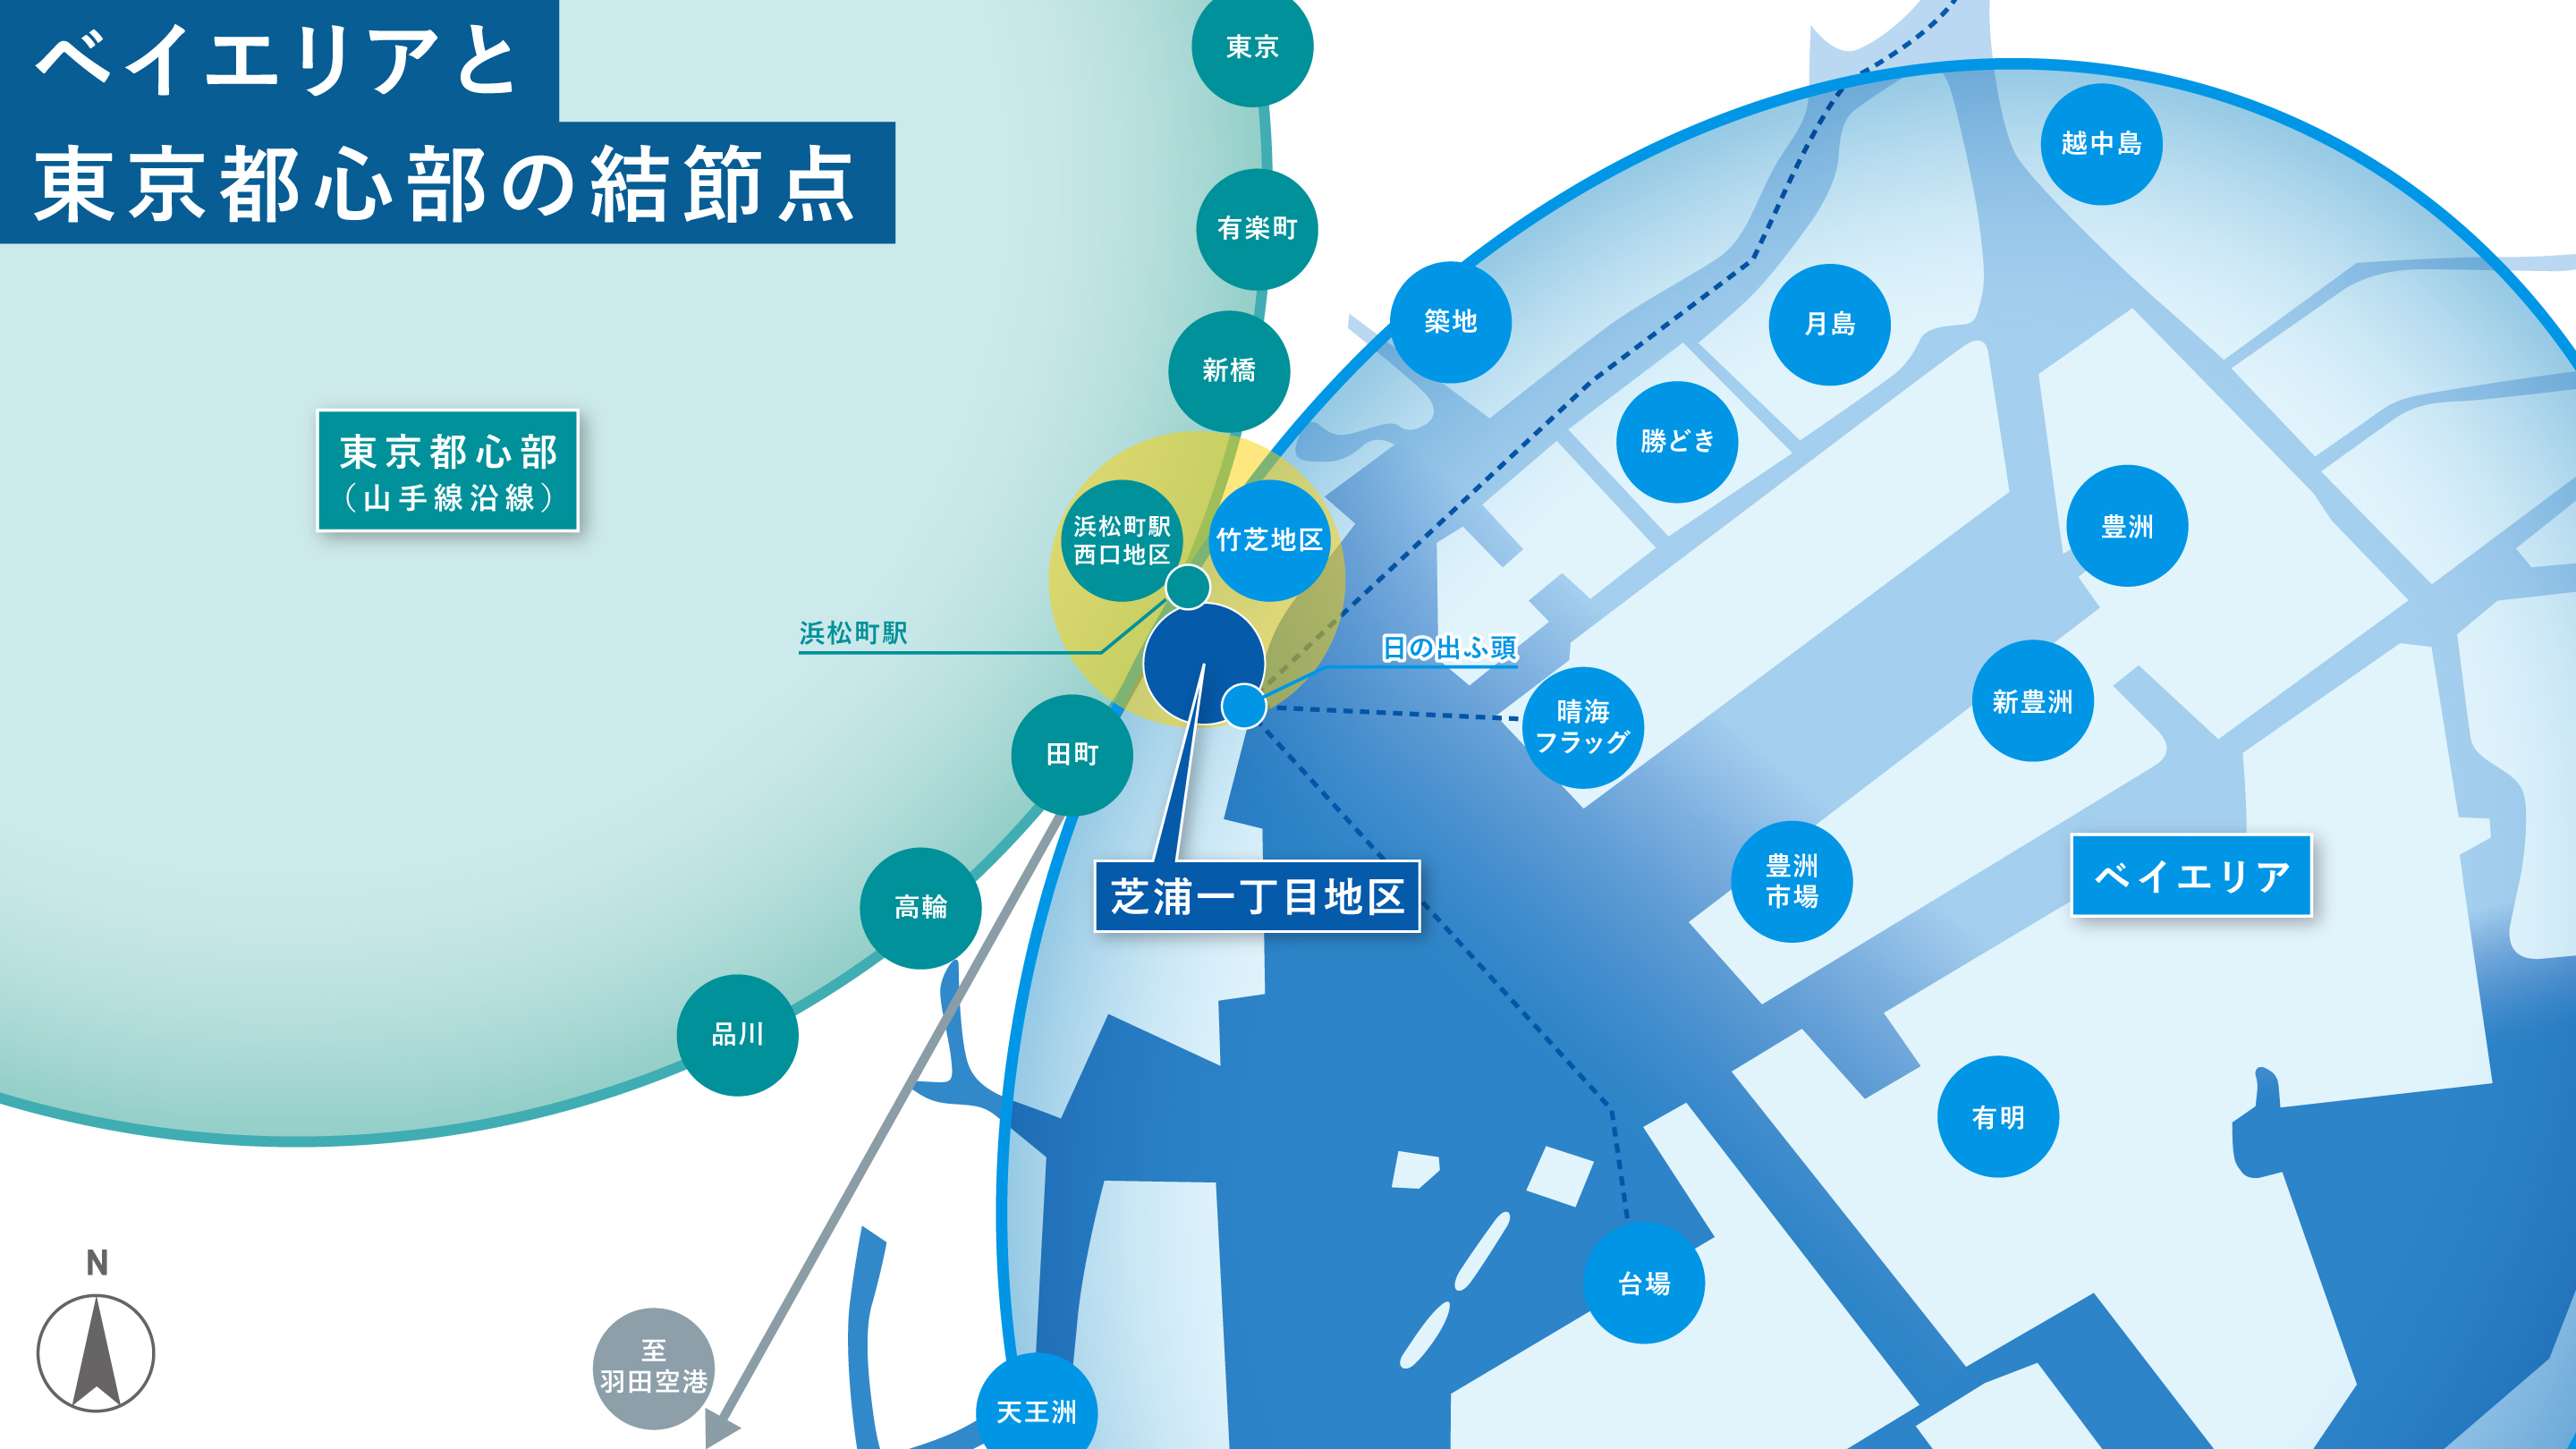 延床面積約 55 万㎡の大規模複合開発「芝浦プロジェクト」街区名称決定　　　　　　　　　　　　　　　　　　　　　　　　　　　　　　　　　　　　　　　　「BLUE FRONT SHIBAURA」のサブ画像3